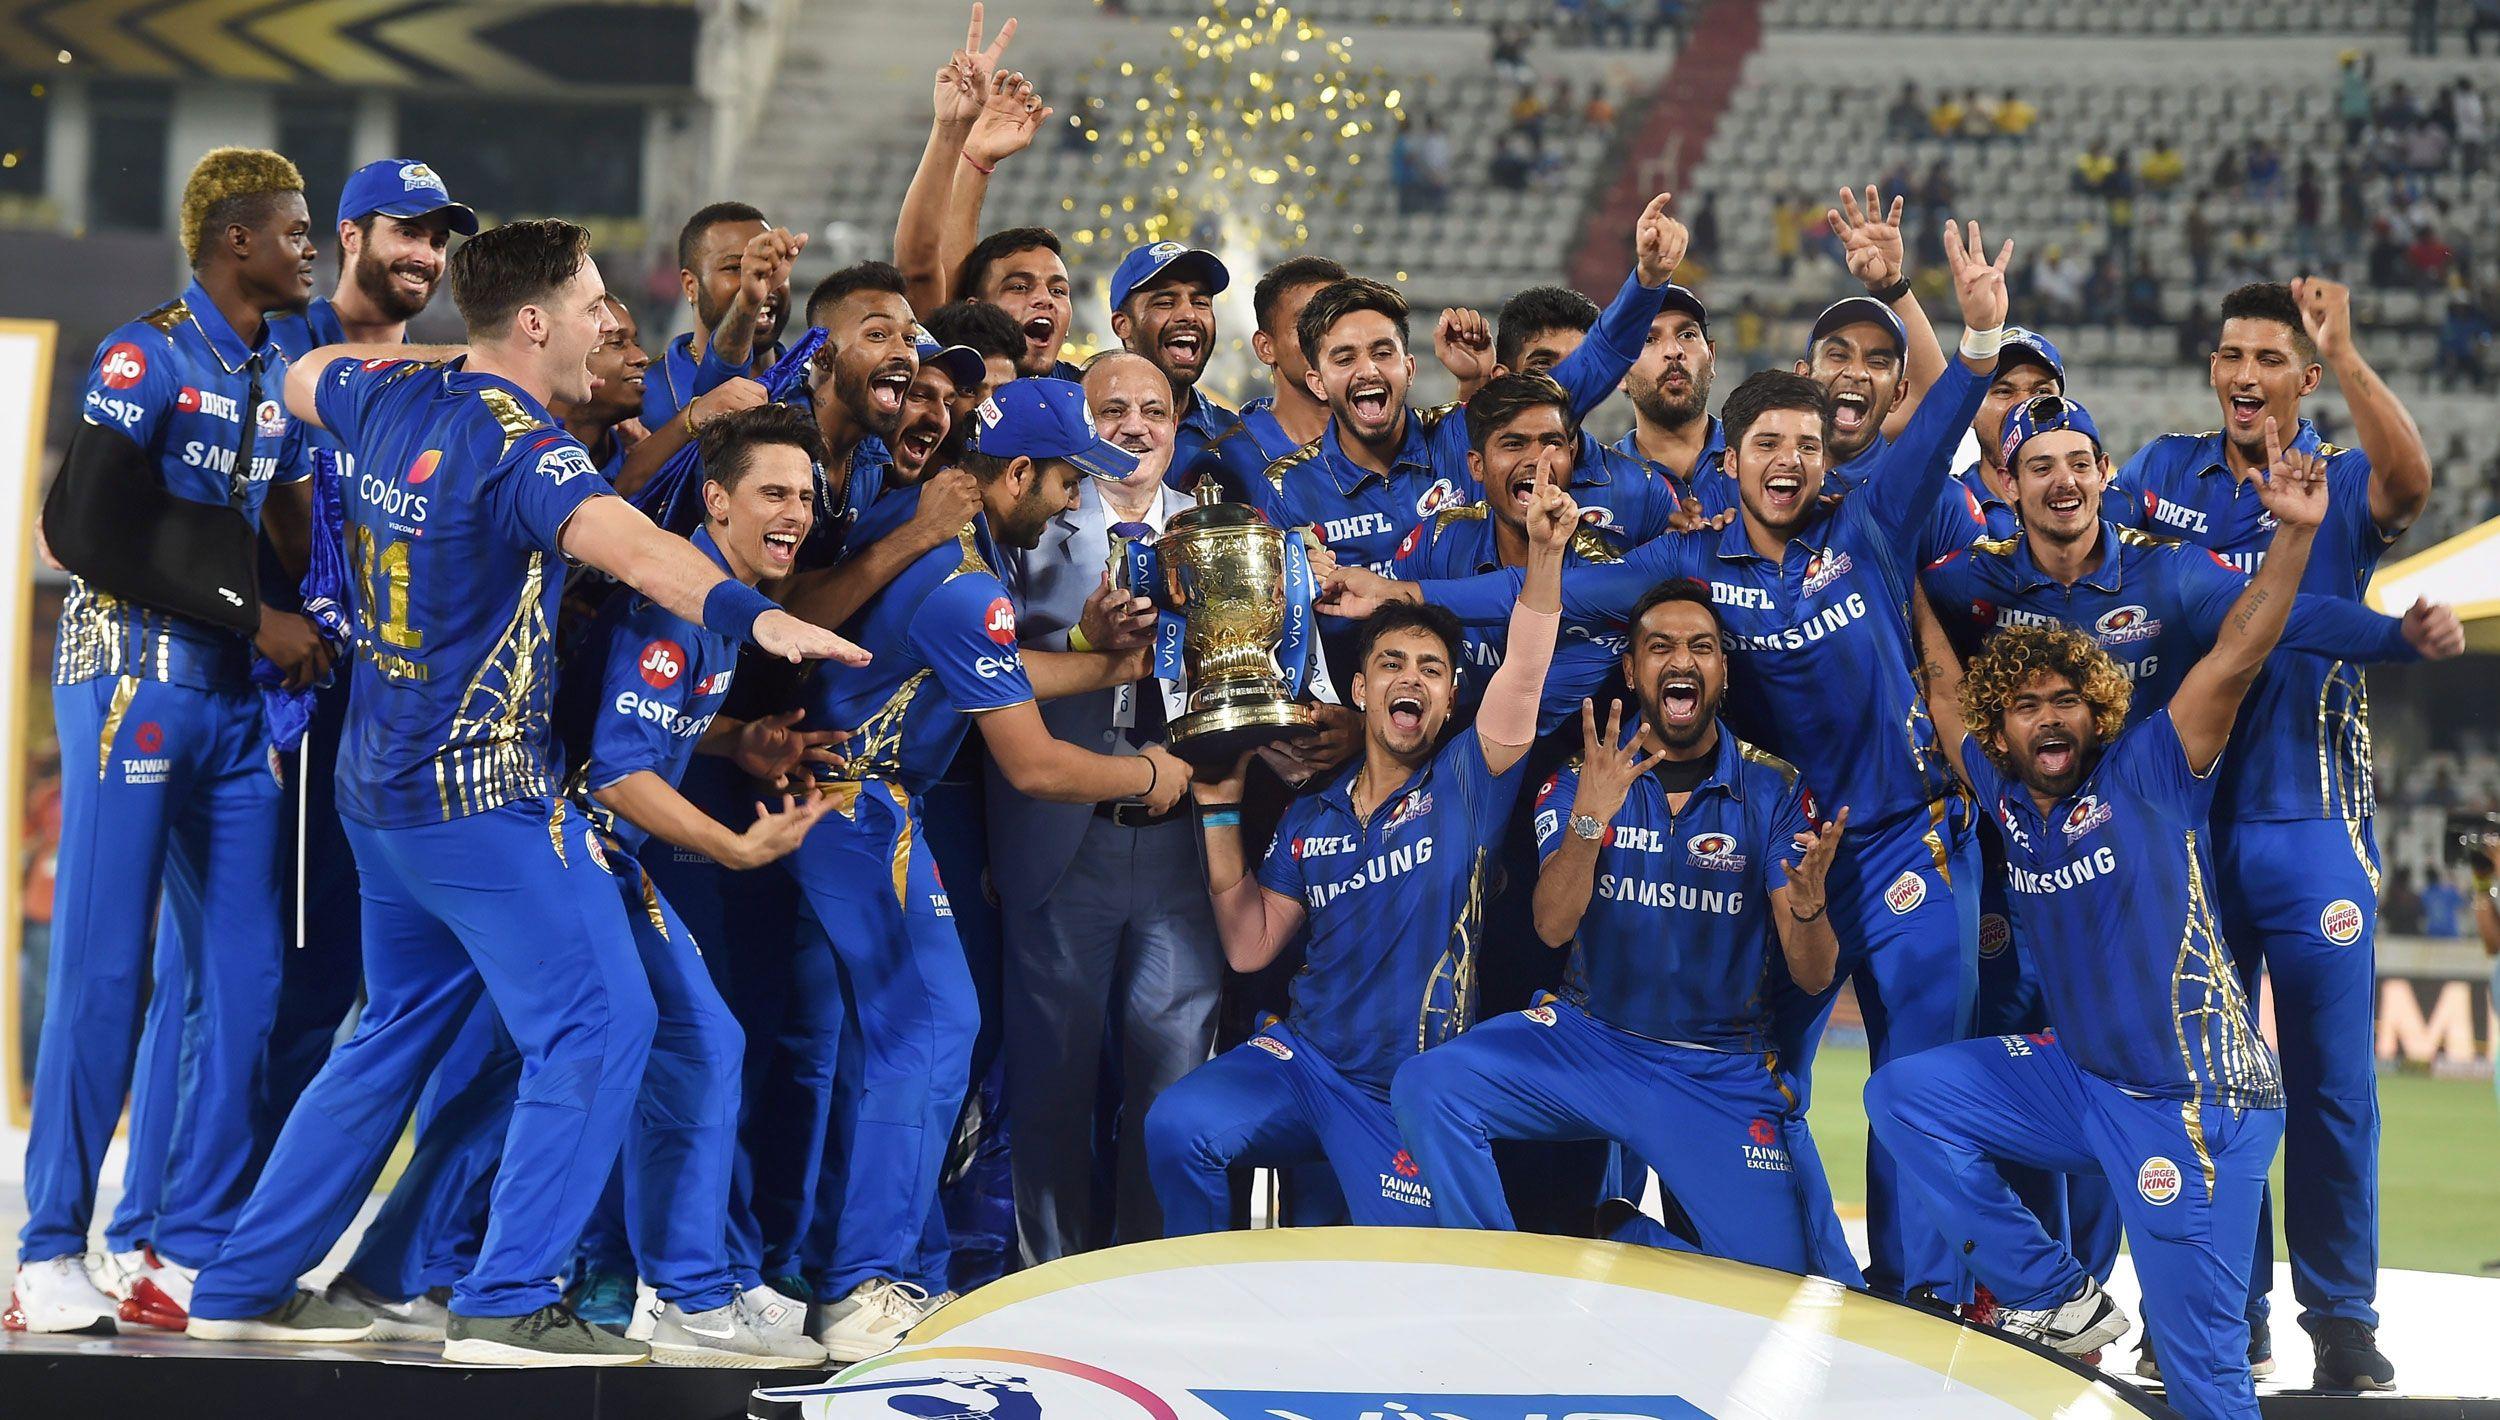 2500x1420 Nhận phần thưởng khi chơi với tư cách một đội, Rohit Sharma nói